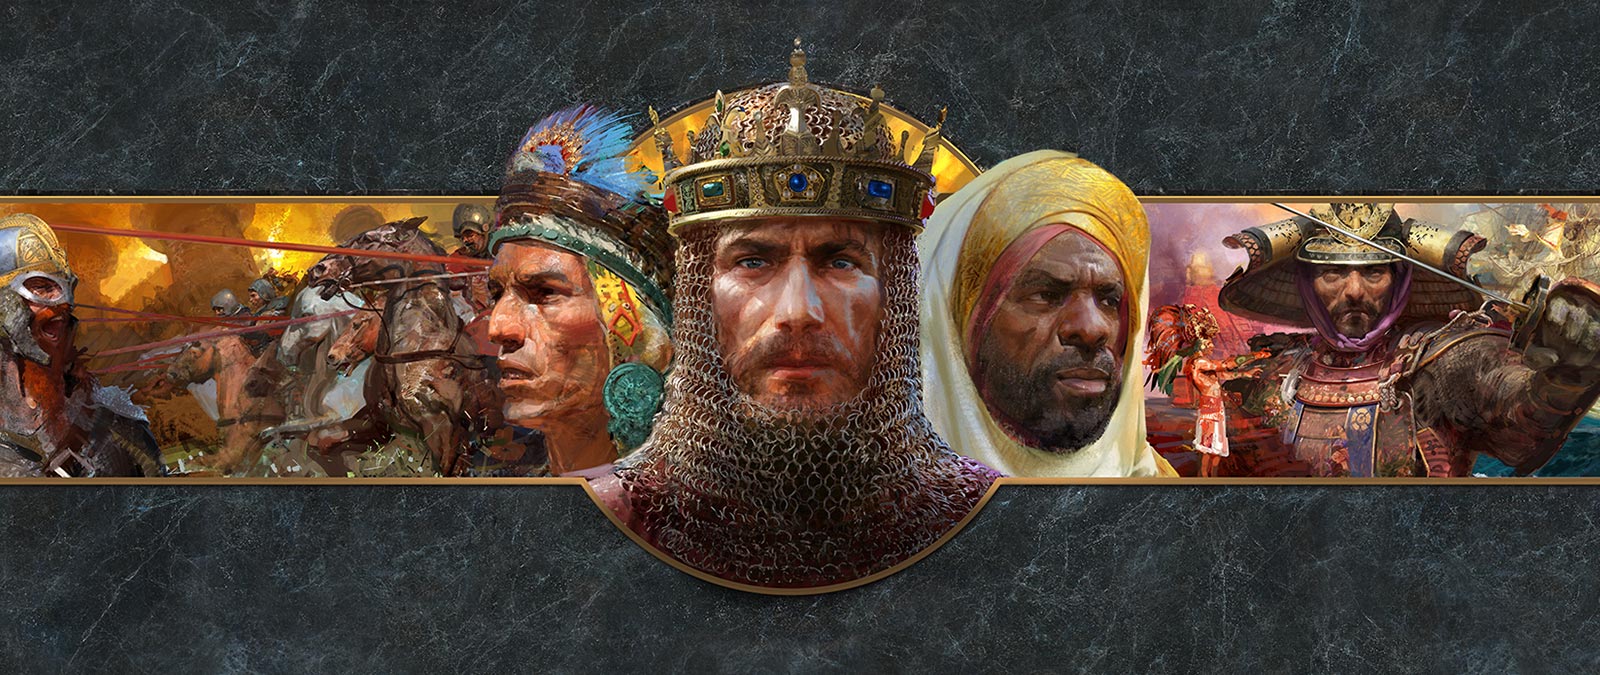 As fotos das caras de líderes de diferentes civilizações são mostradas em frente a cenas de batalha.